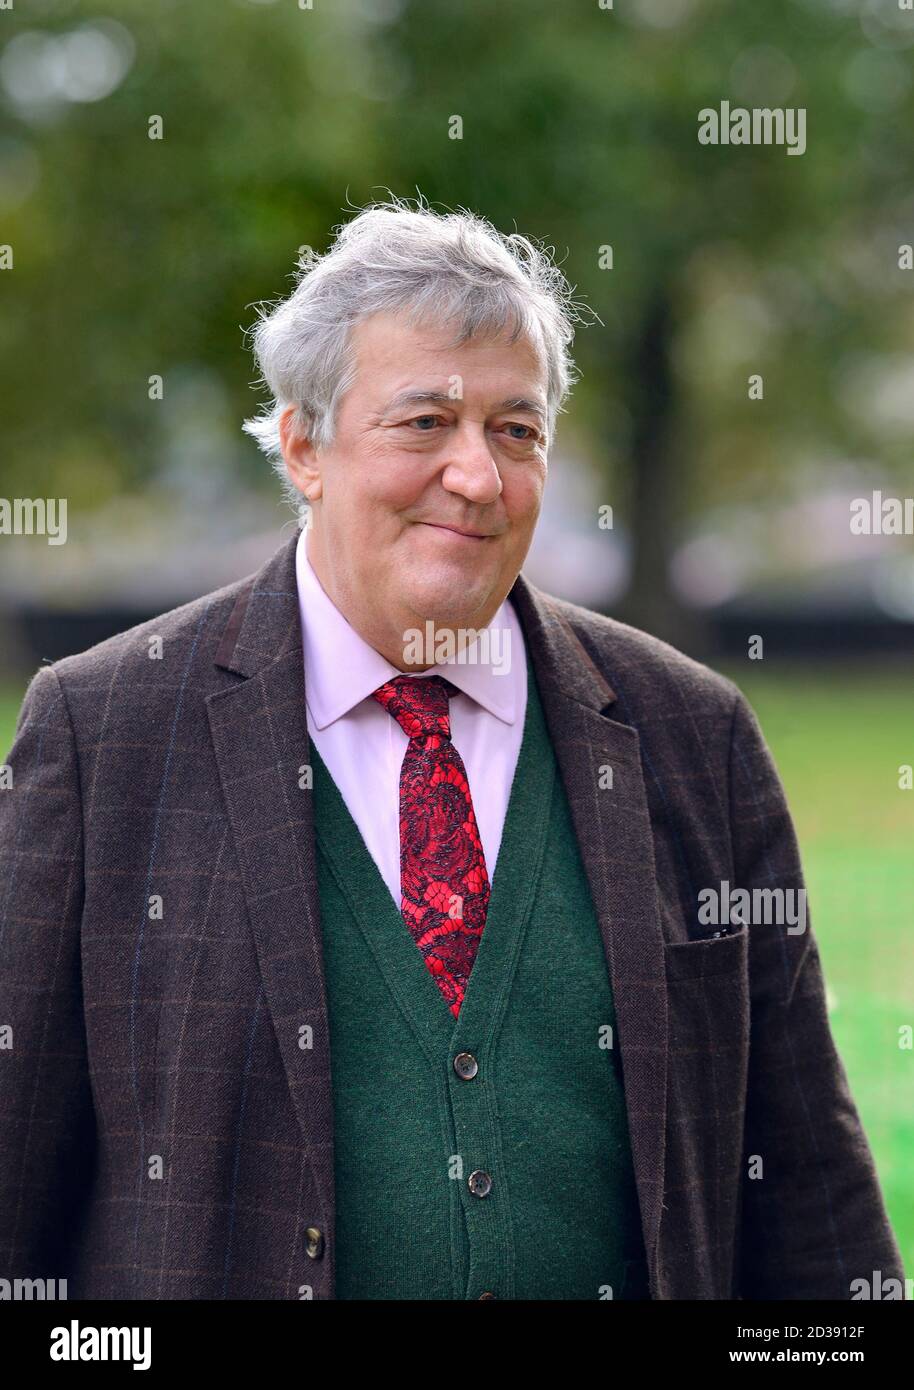 Stephen Fry - attore, comico e scrittore - a Westminster dopo aver girato un'intervista. Ottobre 2020 Foto Stock